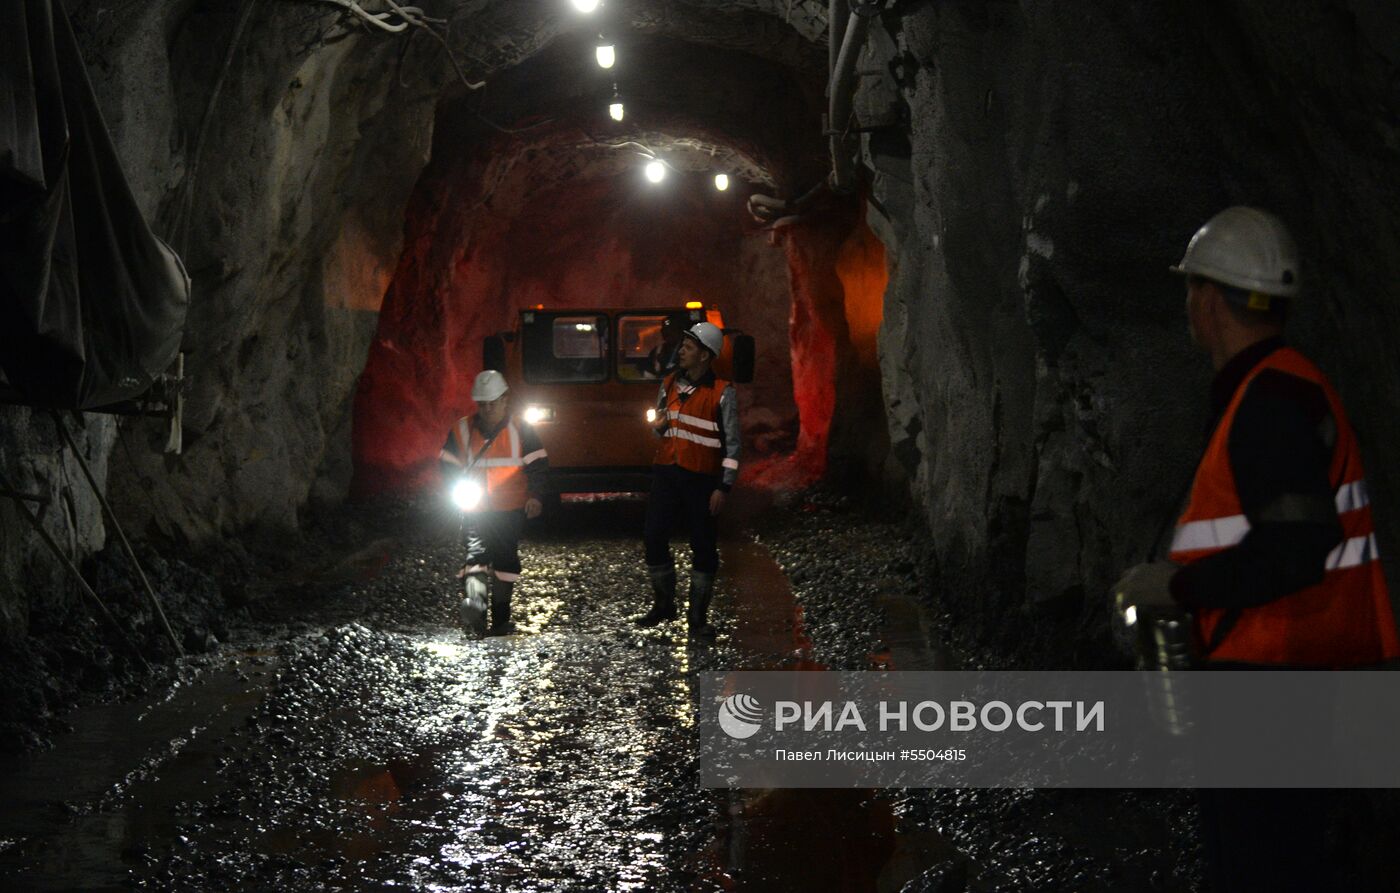 Подземный рудник "Сафьяновская медь" в Свердловской области